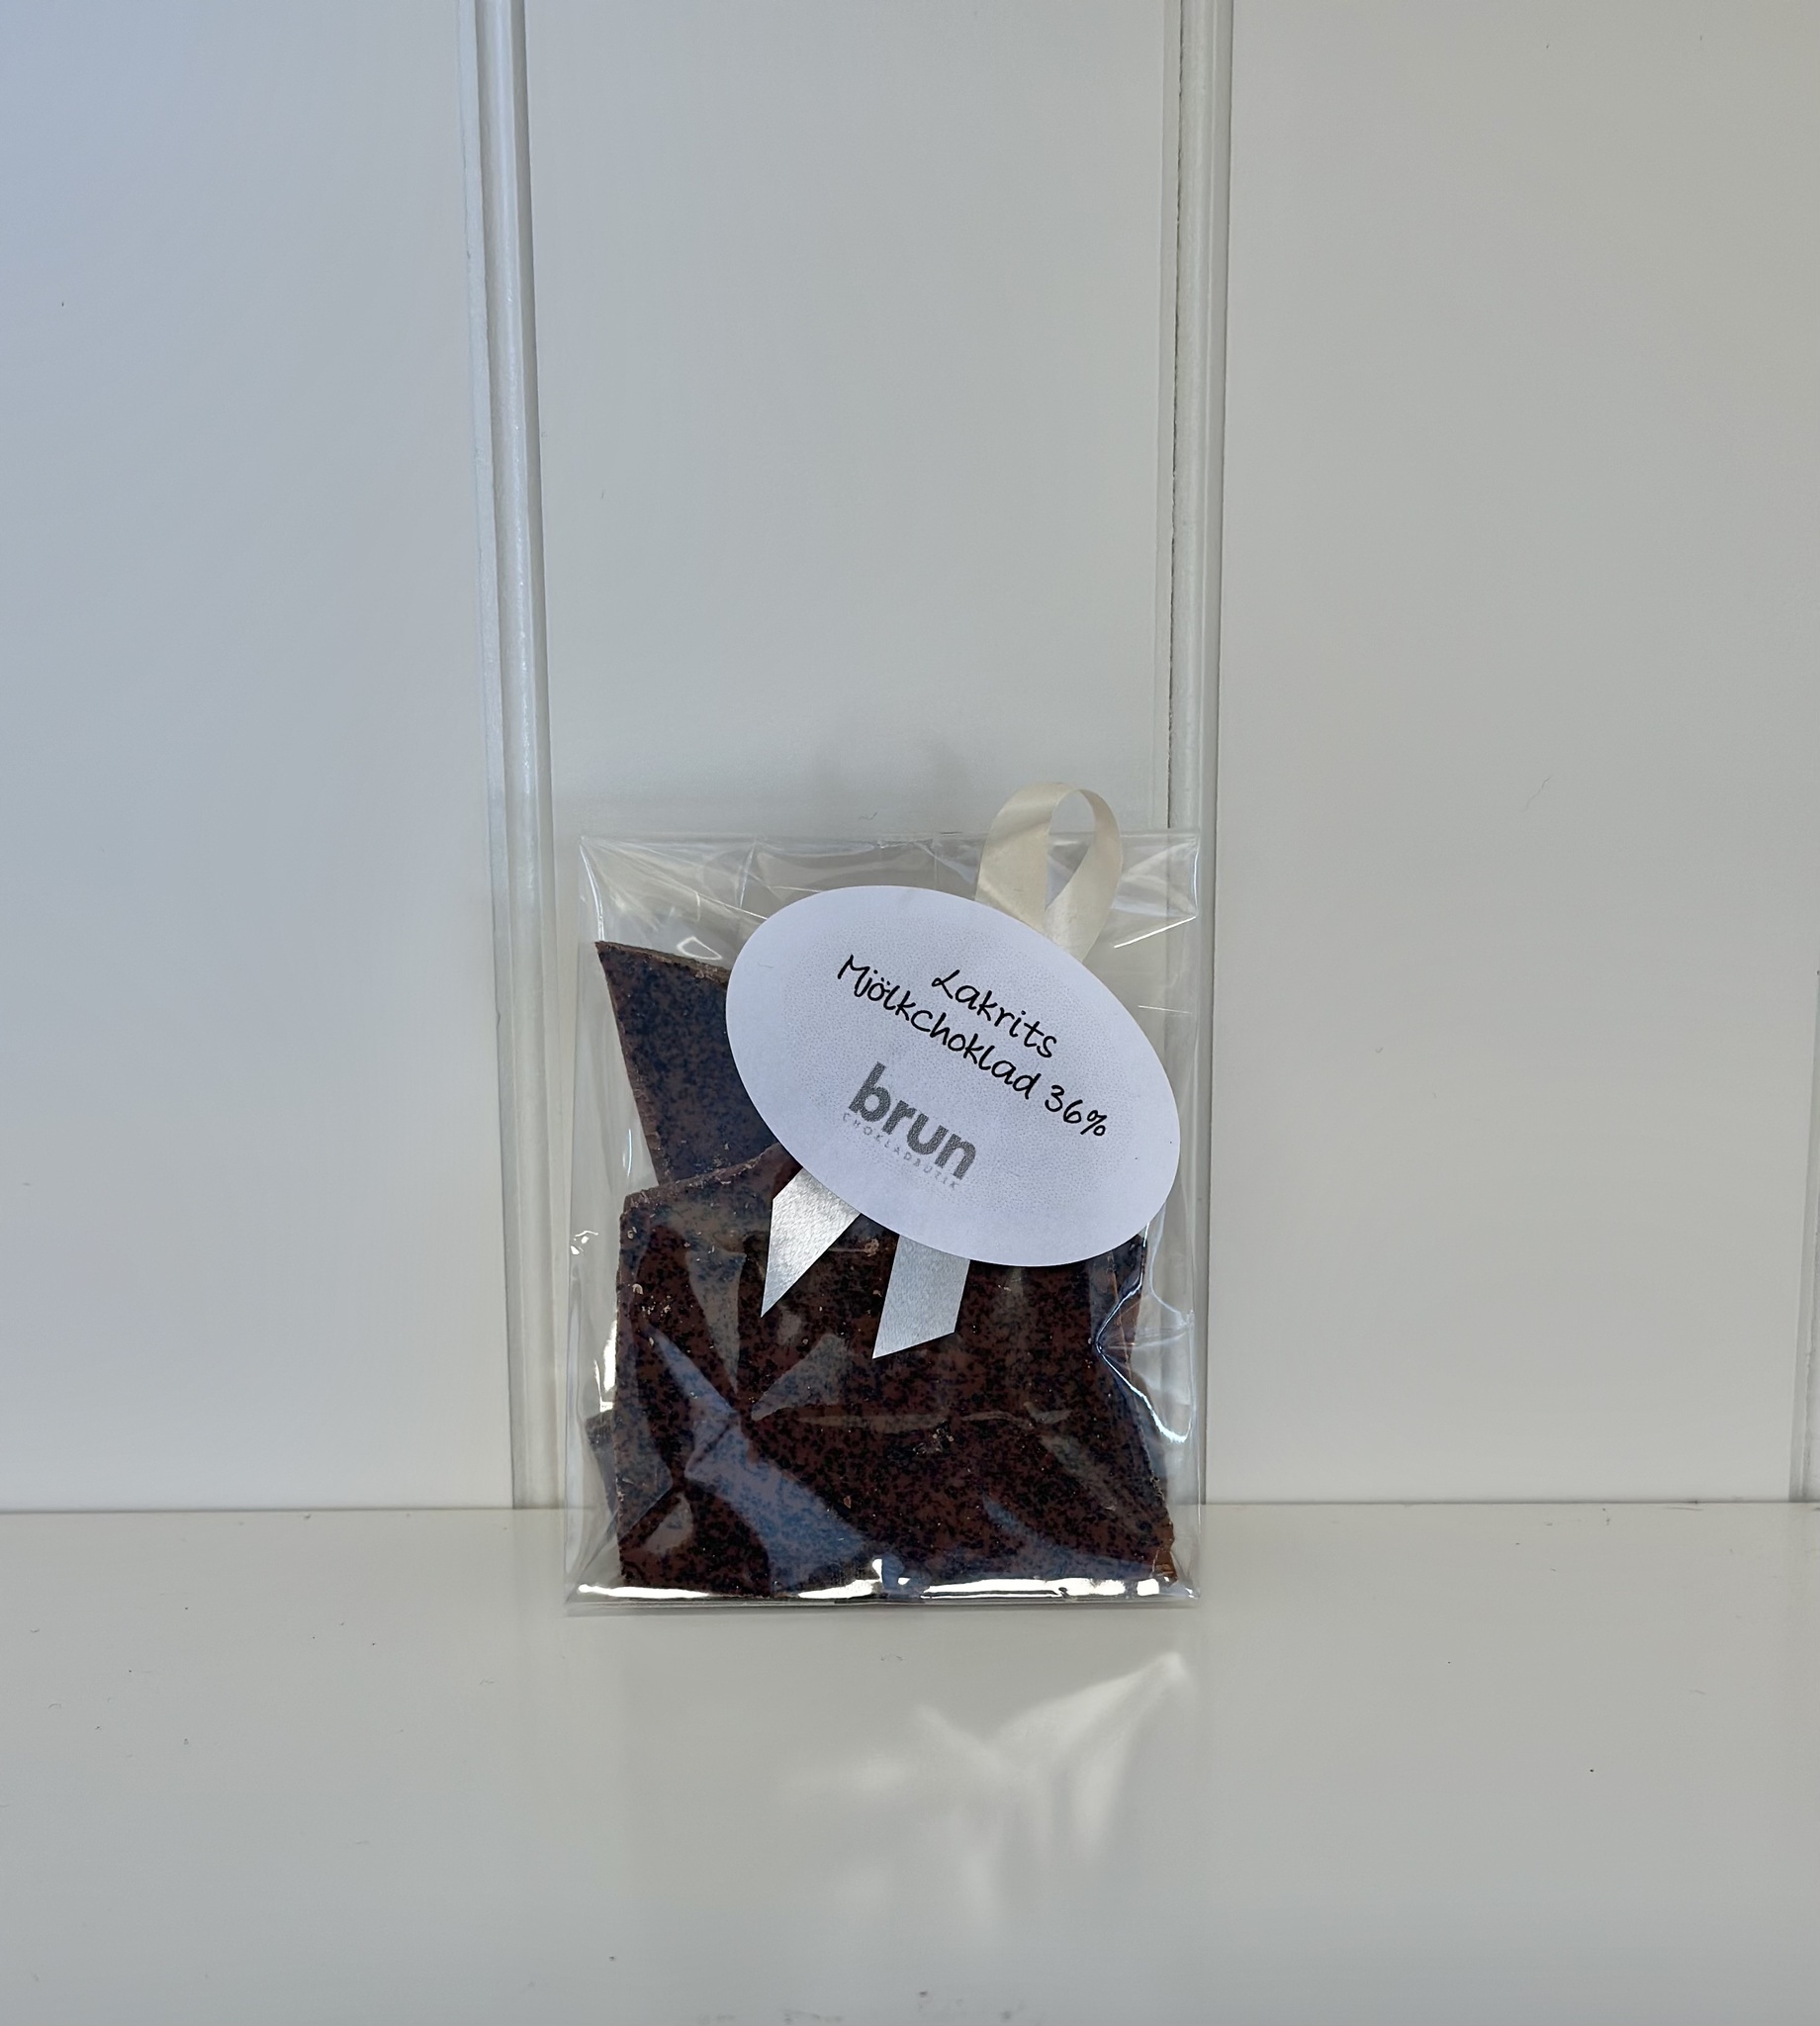 Vår egen: Chokladbräck Lakrits 36% i mjölkchoklad.